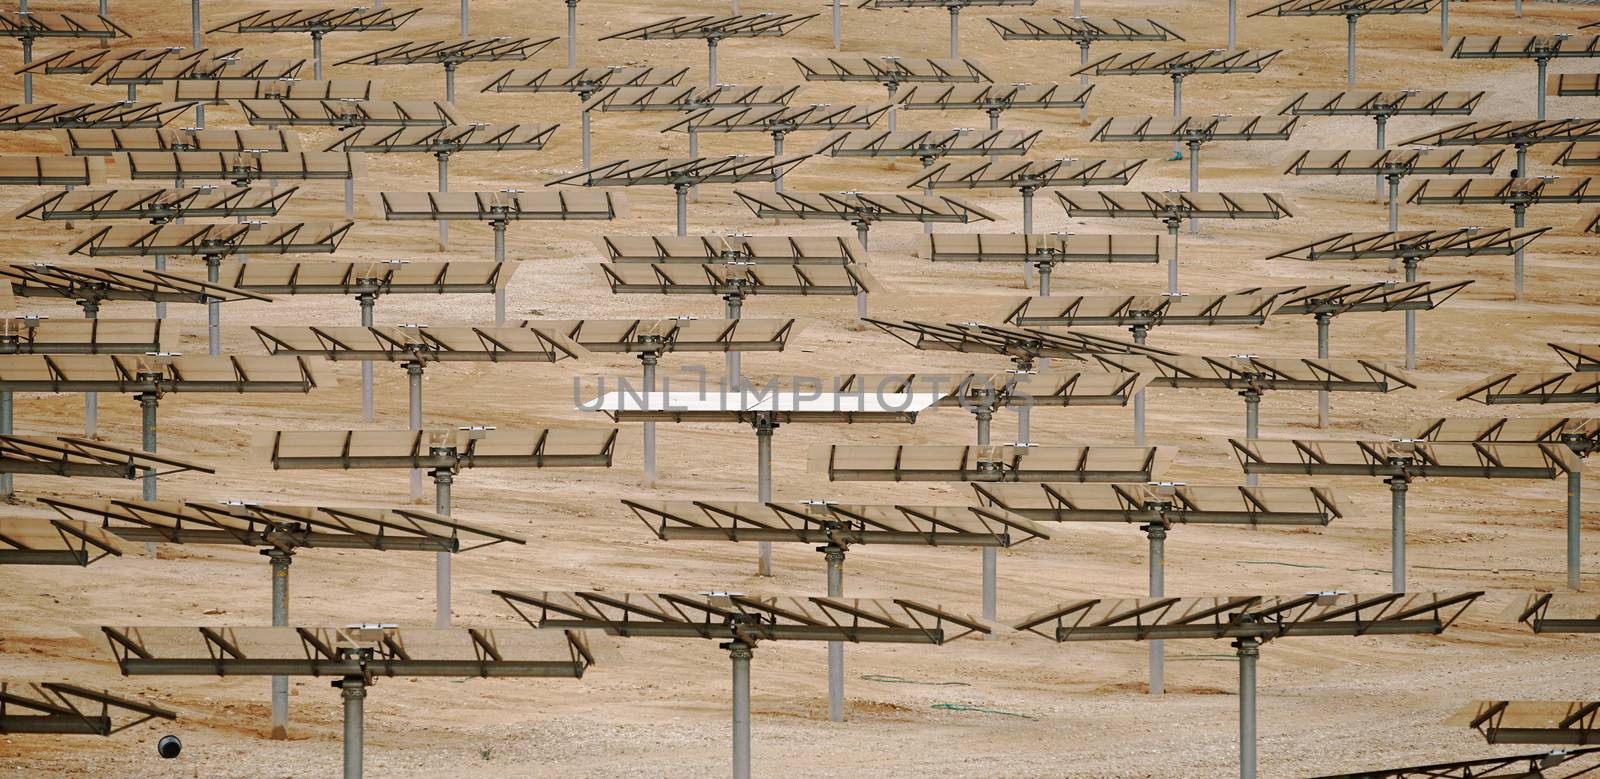 alternative energy, industrial landscape solar batteries in the desert